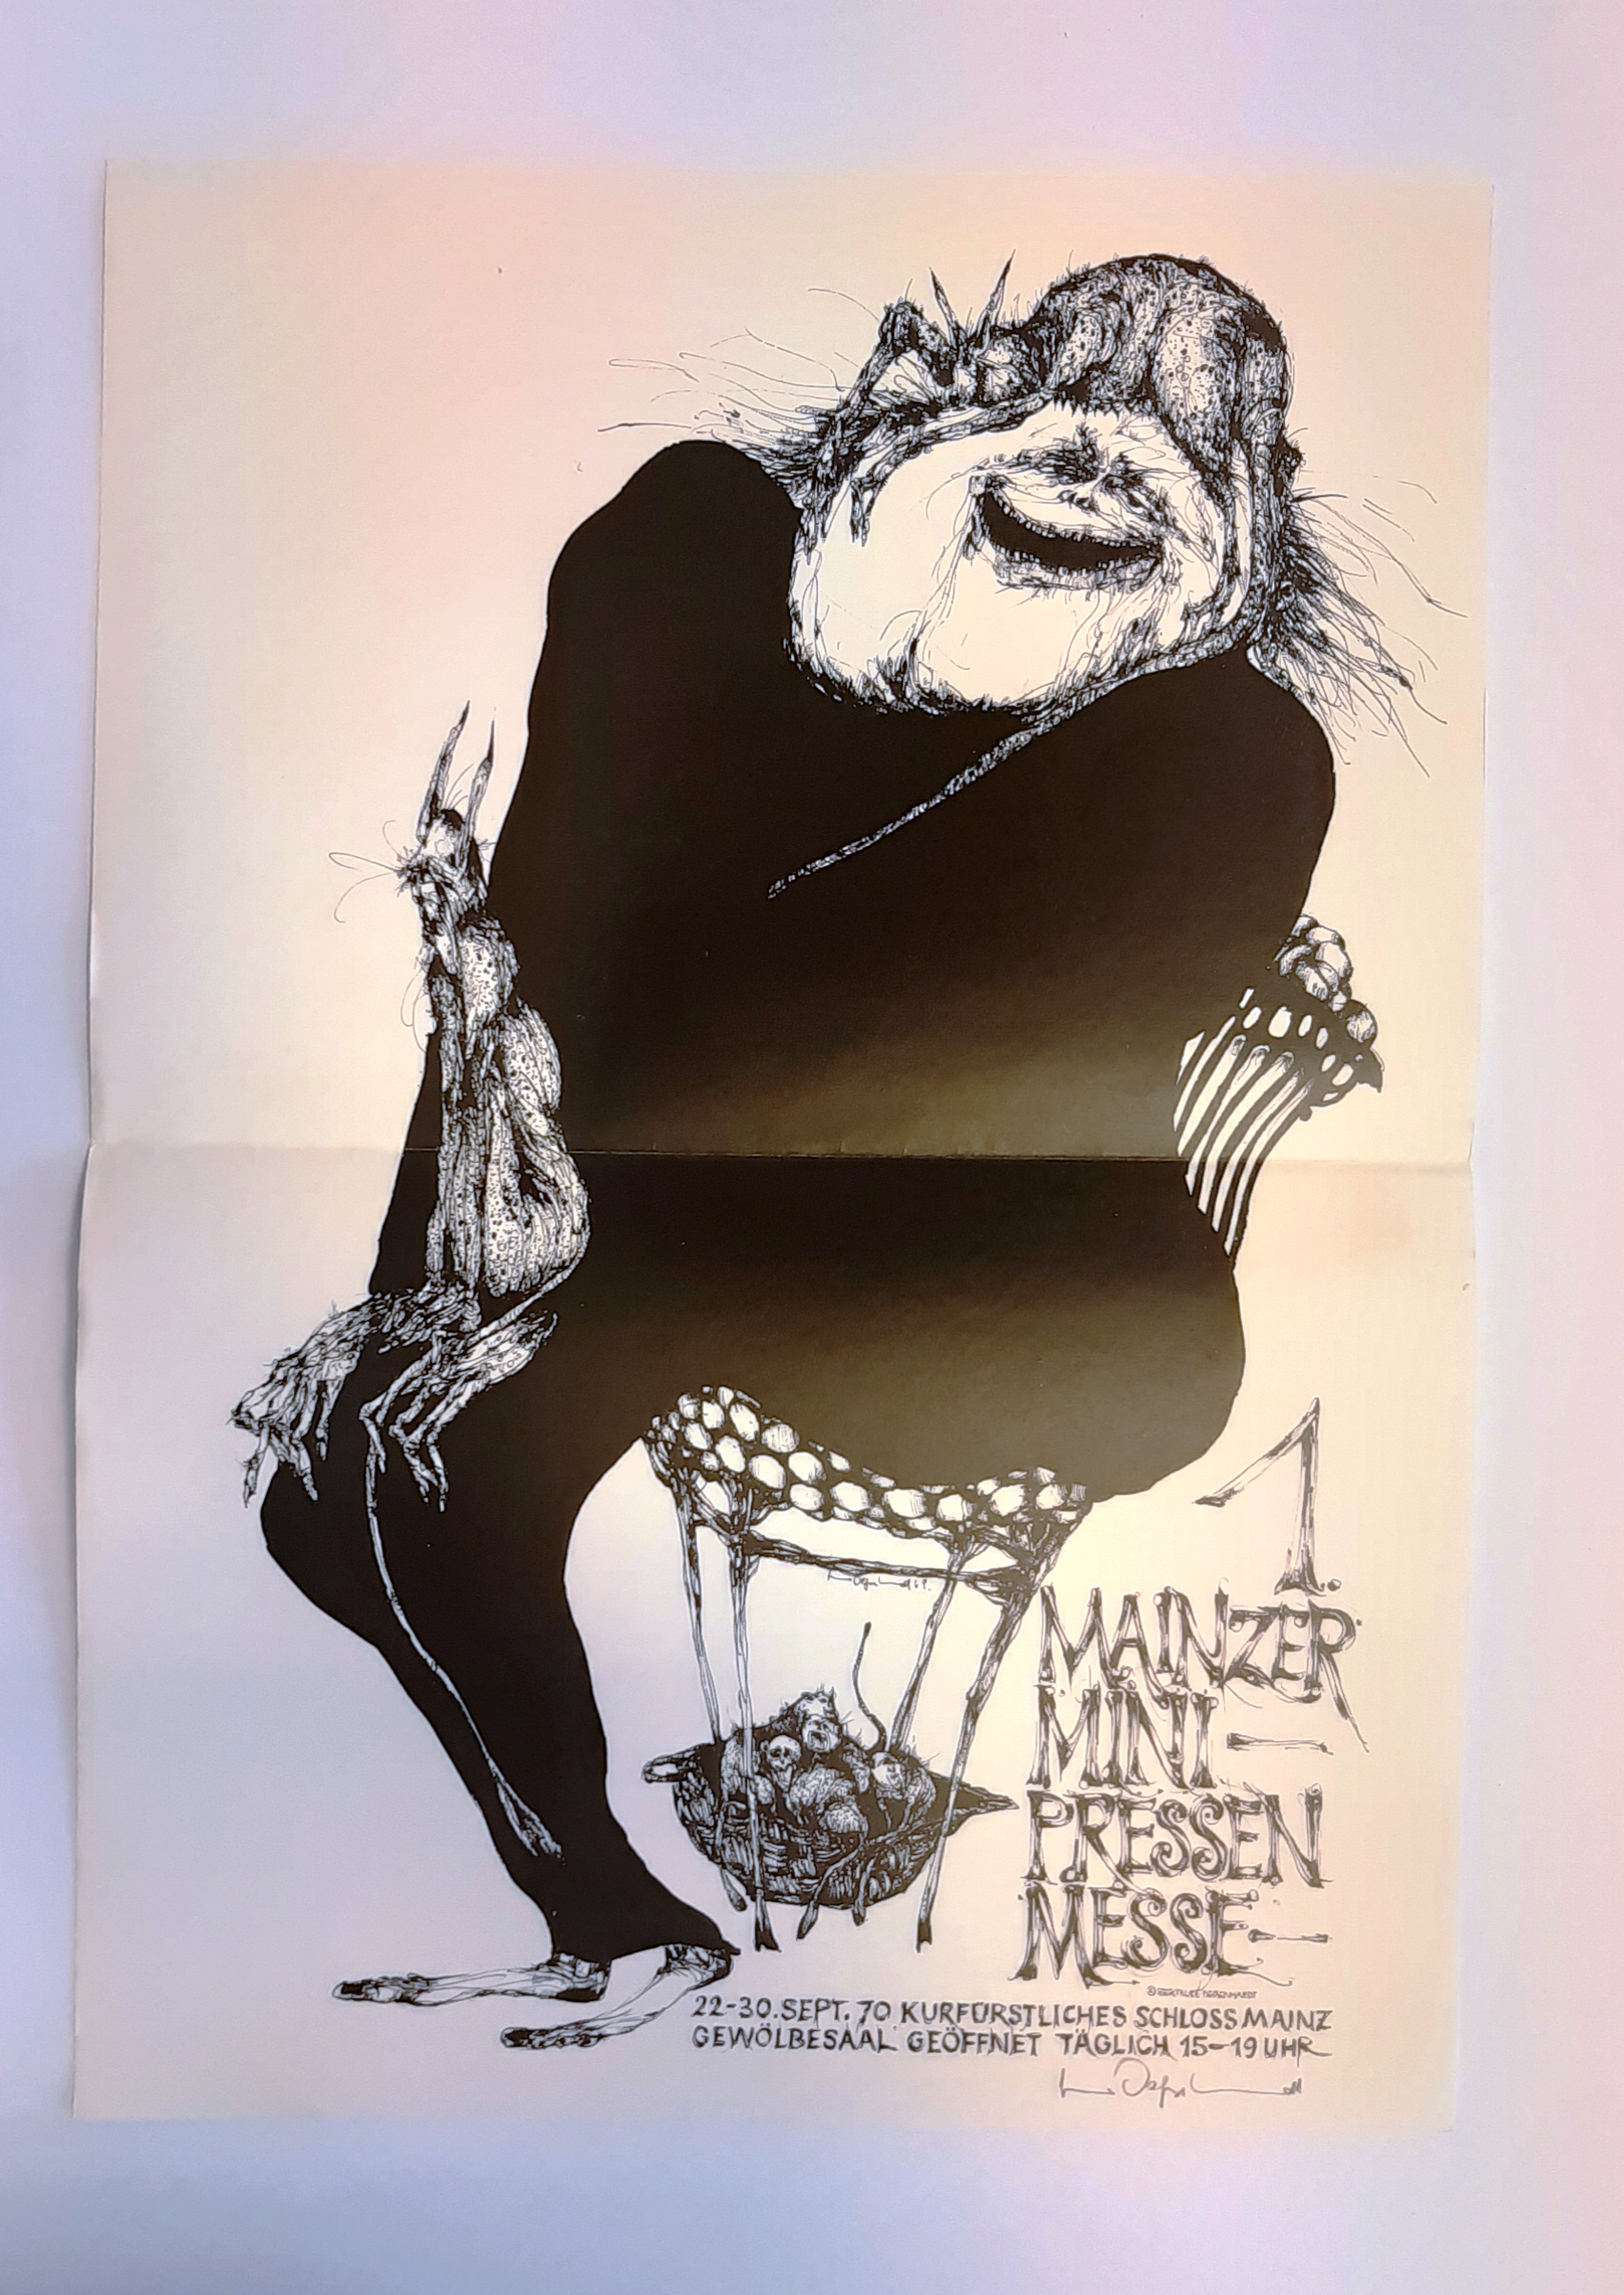 Degenhardt, Gertrude  PLAKAT. Original-Lithographie - 1. Mainzer Mini-Pressen-Messe 1970. 43 x 30,5 cm, eigenhändig mit Bleistift sigiert. 